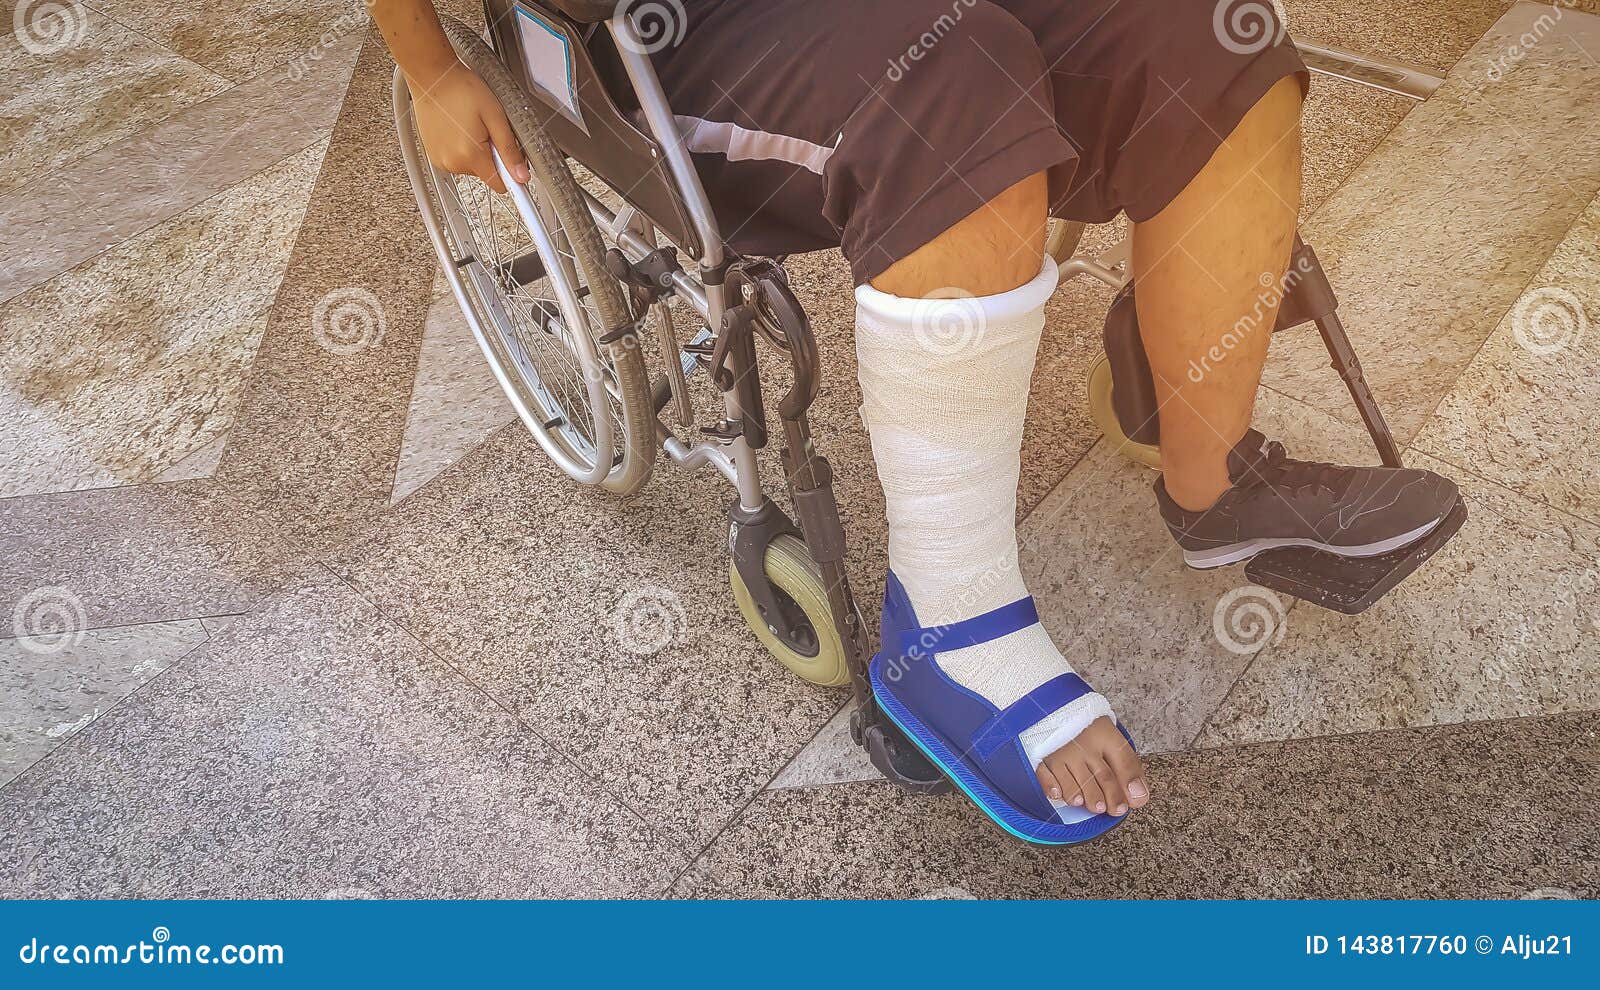 Инвалидная коляска для перелома ноги